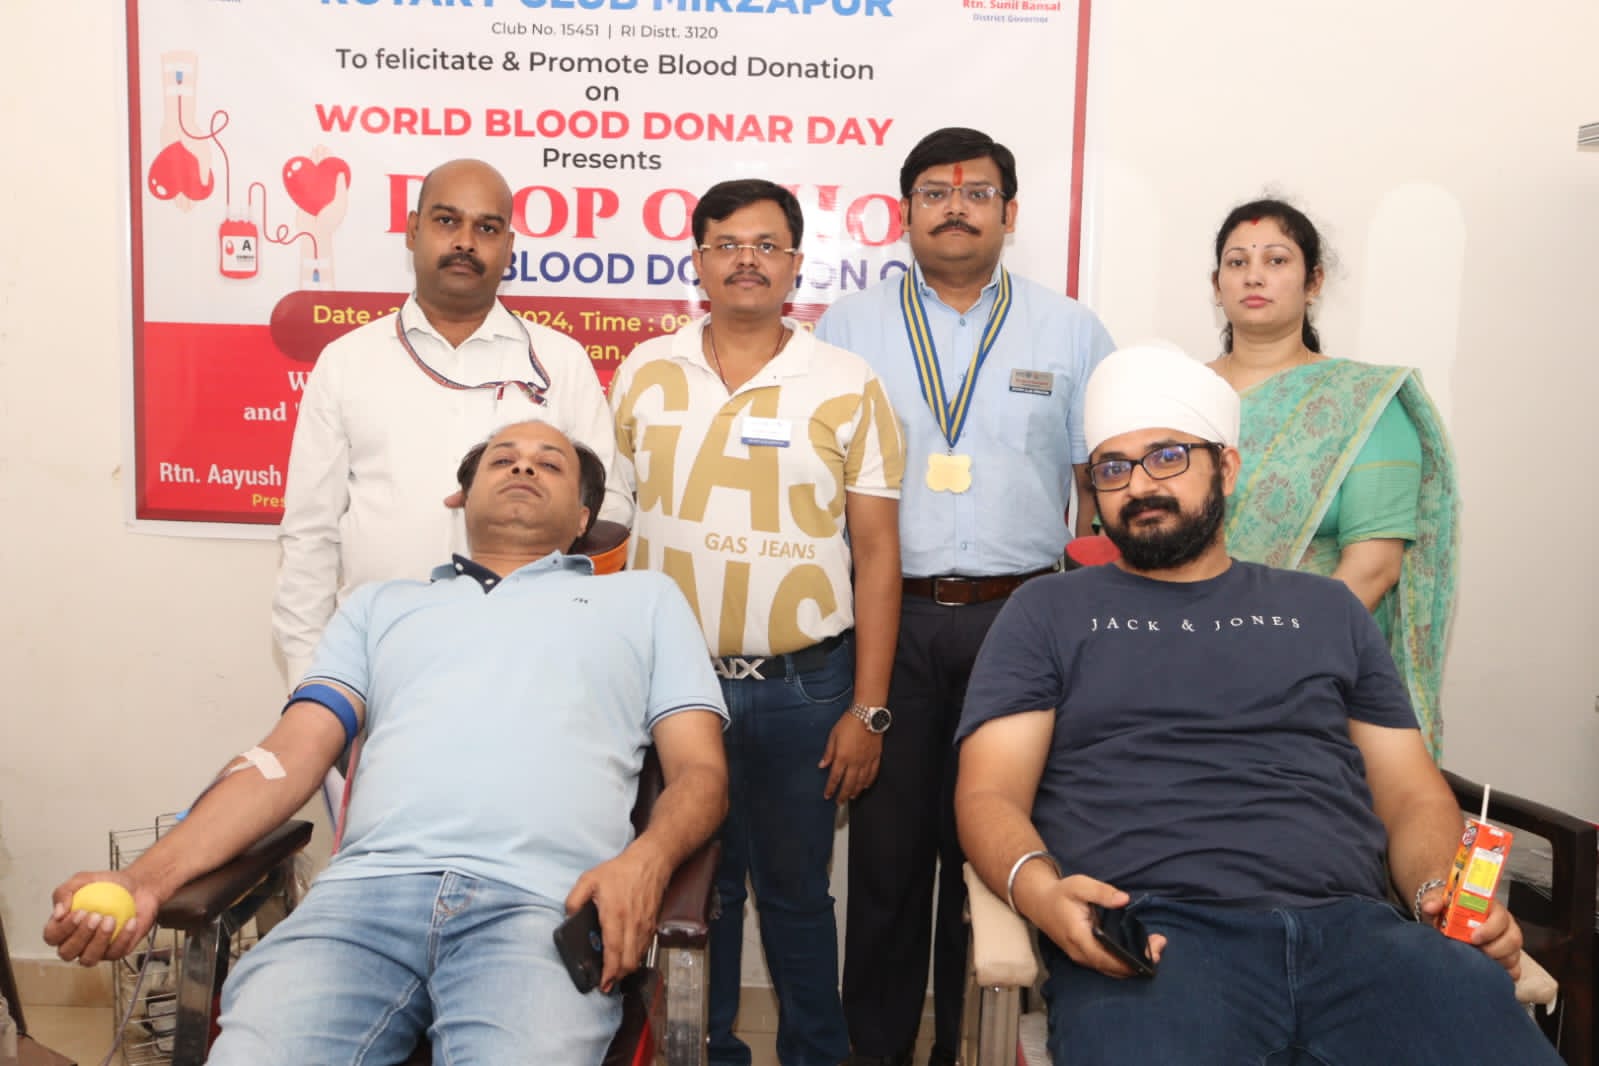 रोटरी क्लब मीरजापुर की ओर से “ड्राप ऑफ होप” रक्तदान शिविर में किया रक्तदान और गर्मी में पक्षियों को संरक्षण प्रदान करने के लिए प्रोजेक्ट “दाना पानी” की की गयी शुरुआत